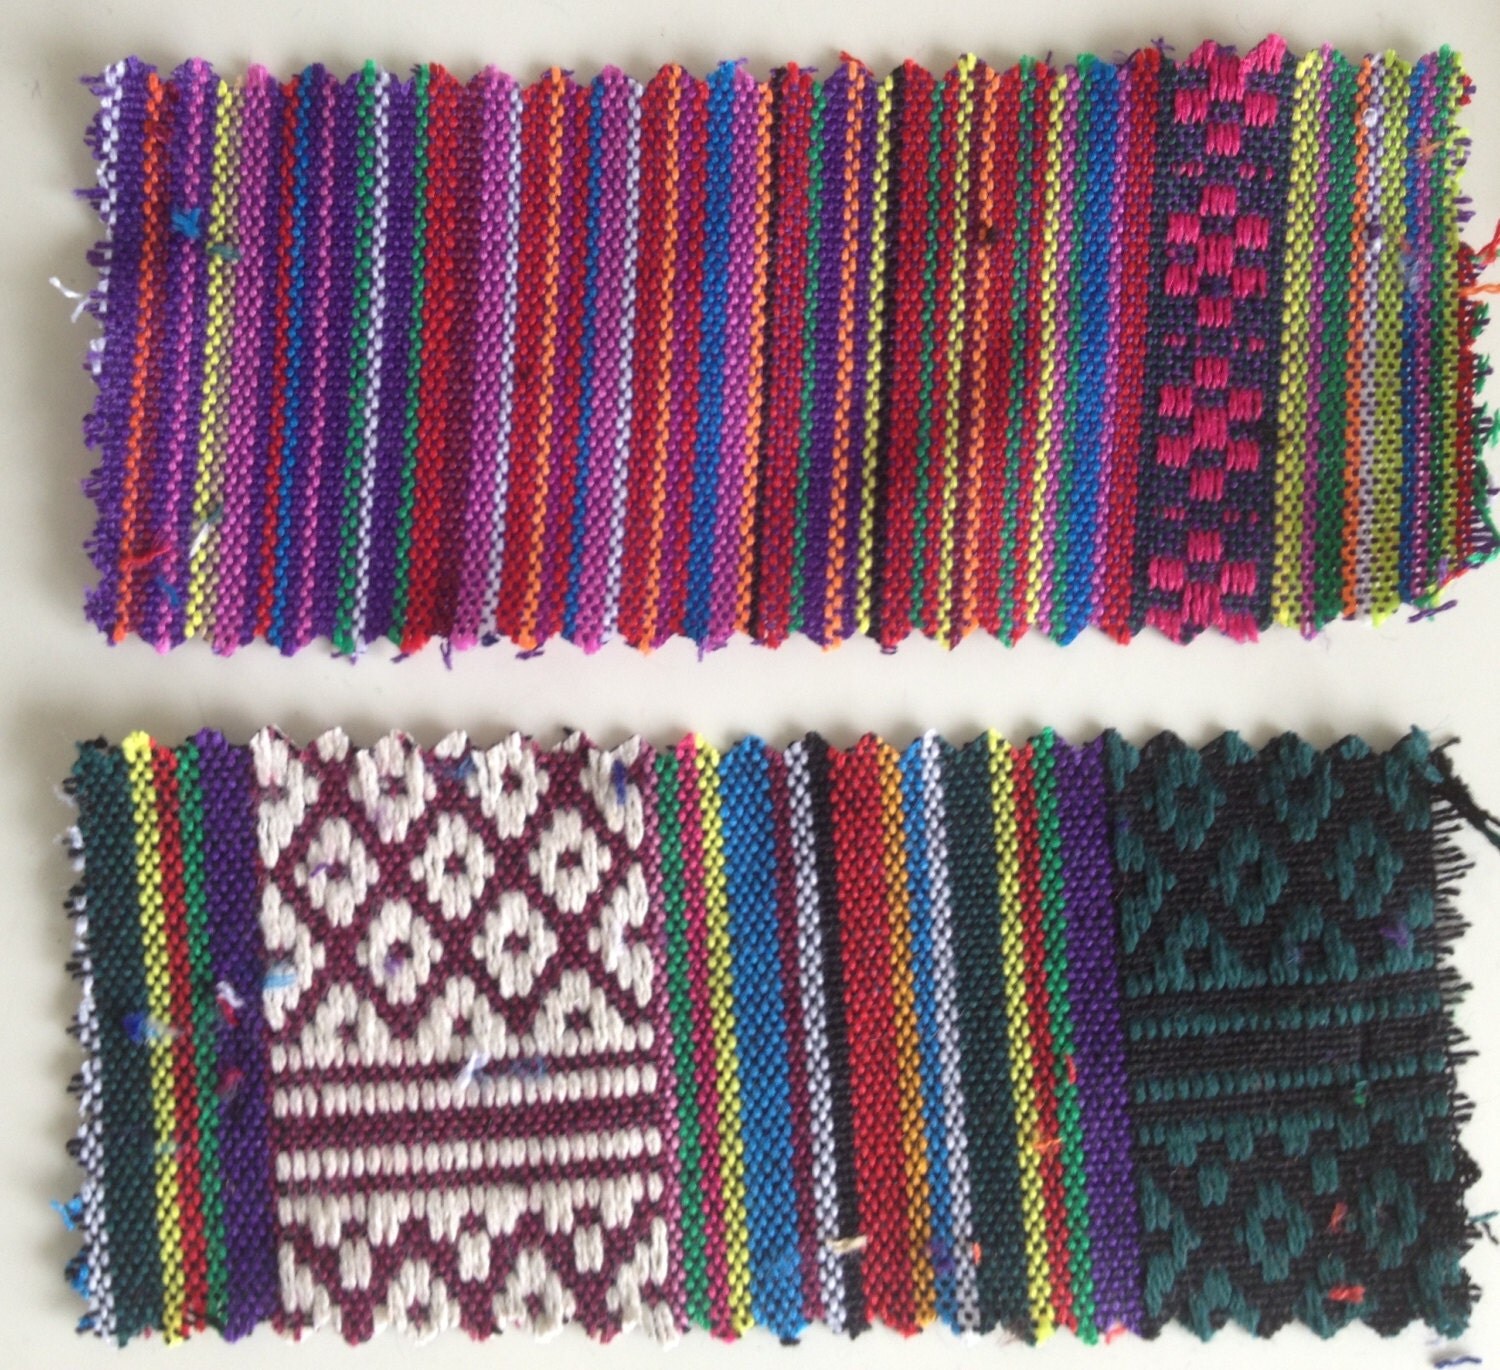 Ethnic Woven Cotton Fabric / Bohemian by LostPropertyHongKong